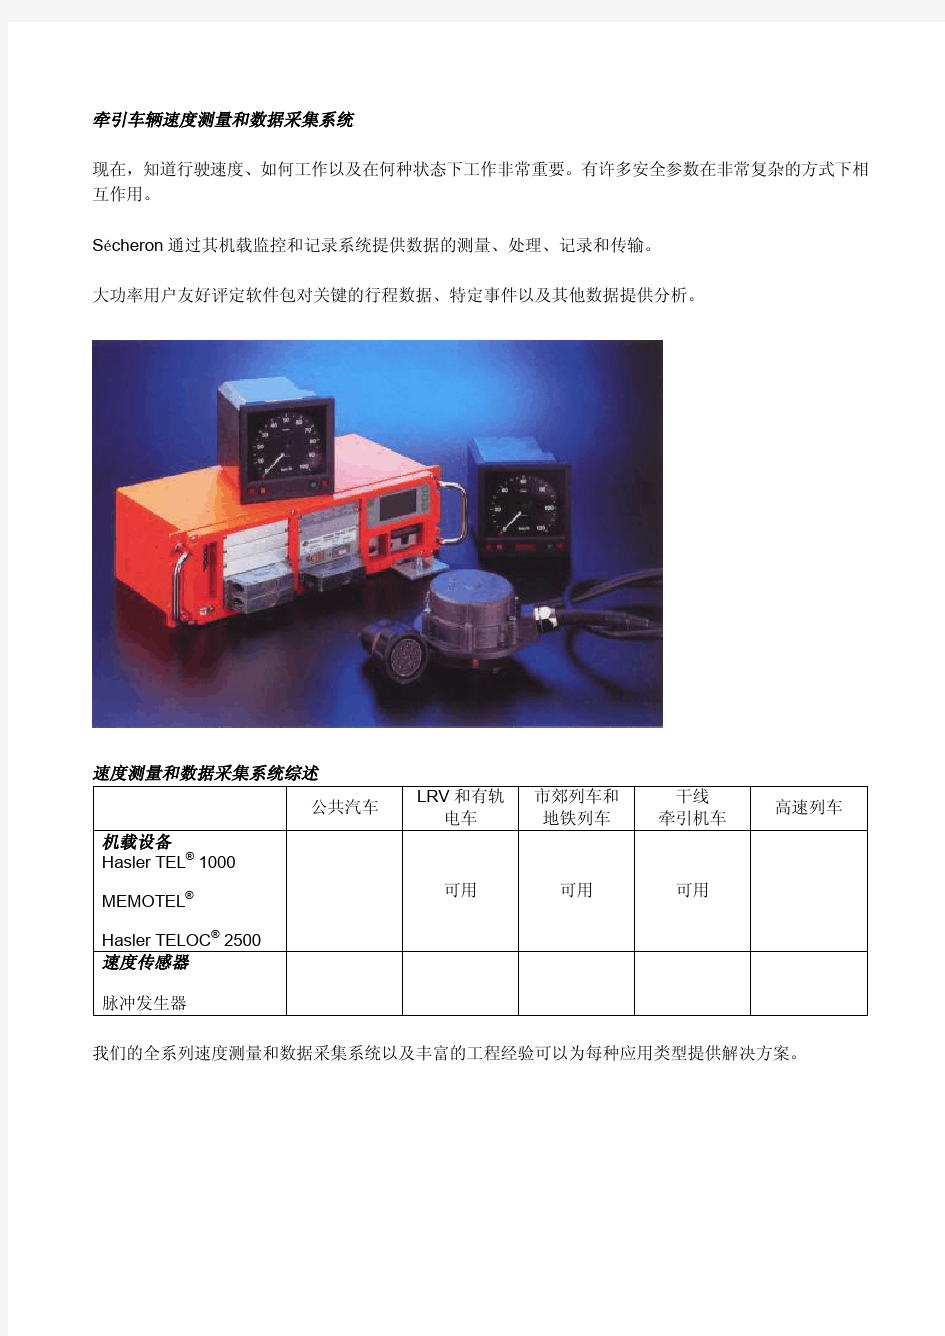 瑞士赛雪龙公司速度测量、数据采集等控制仪表跟显示系统中国代表